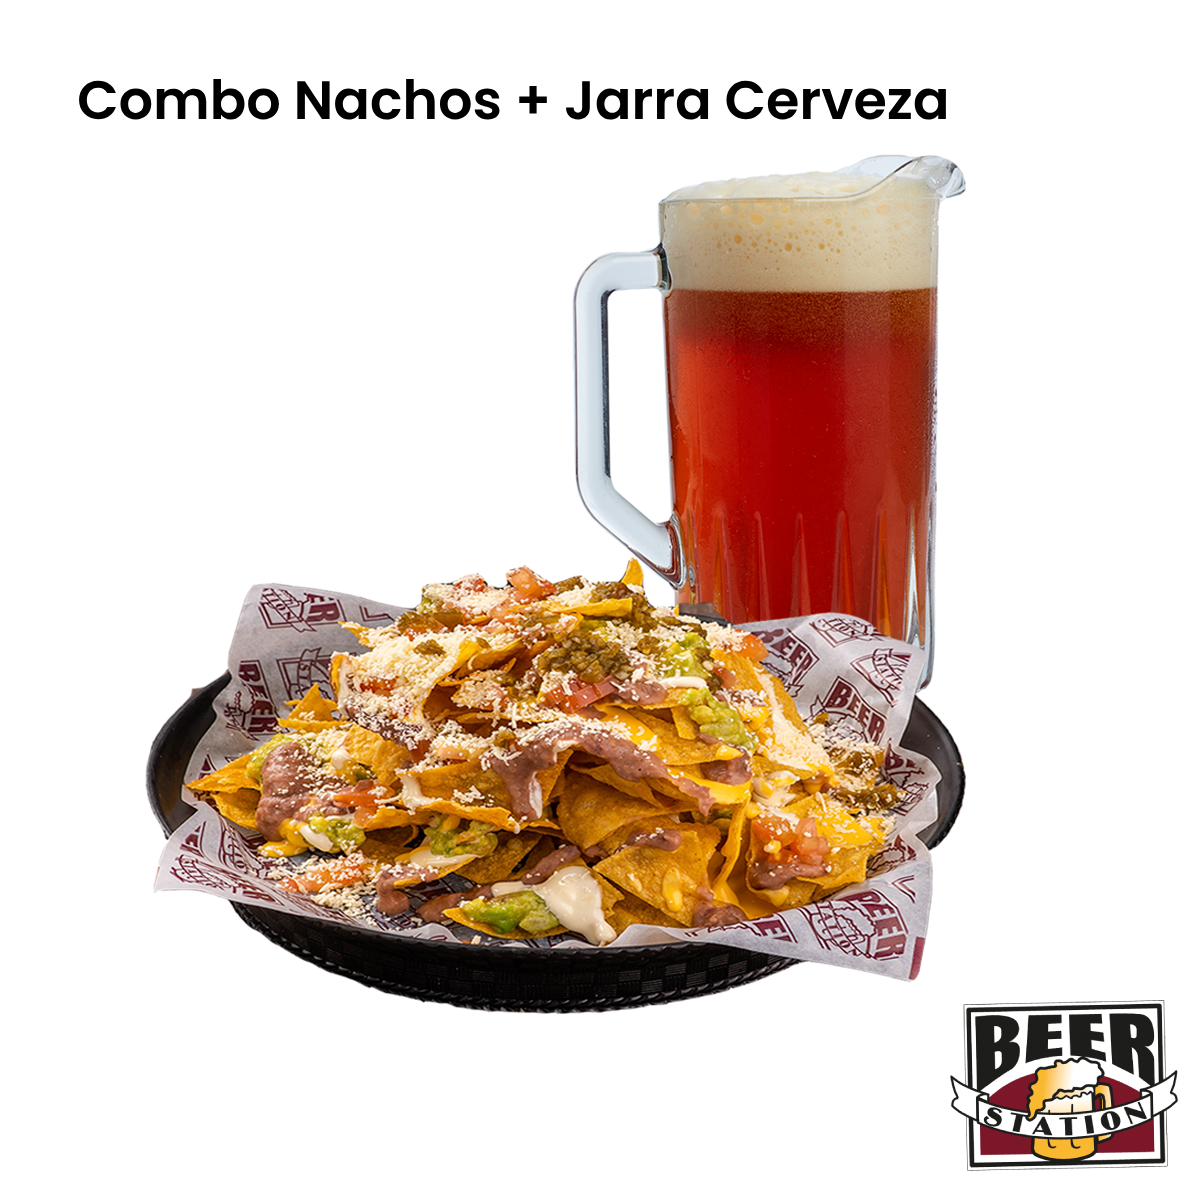 Bono Nachos + Jarra de Cerveza - Beer Station